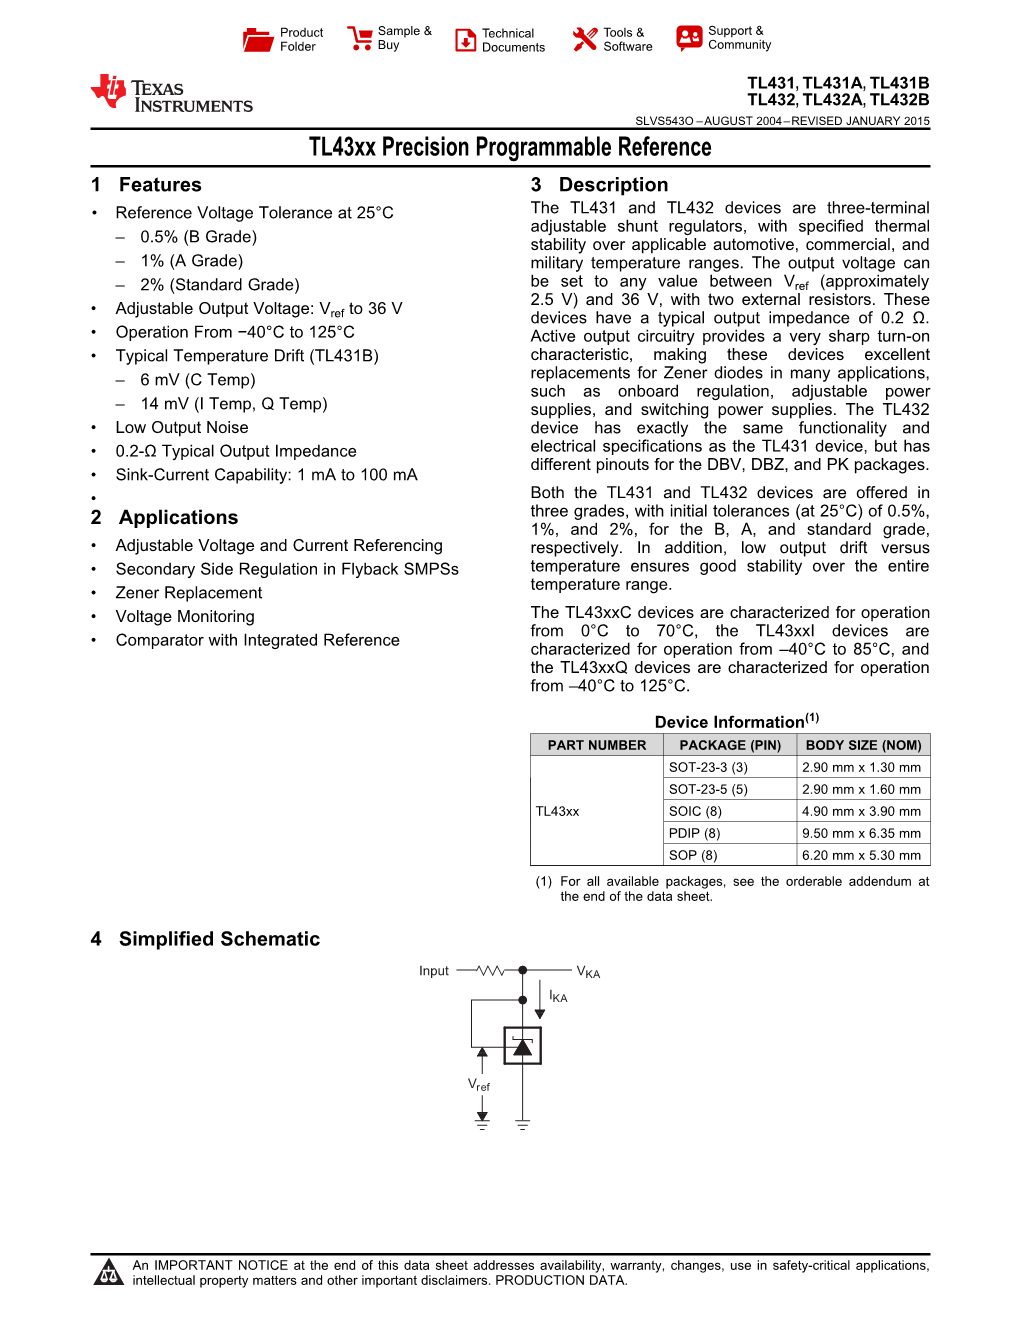 TL431, TL432 Adjustable Precision Shunt Regulator (Rev. O)